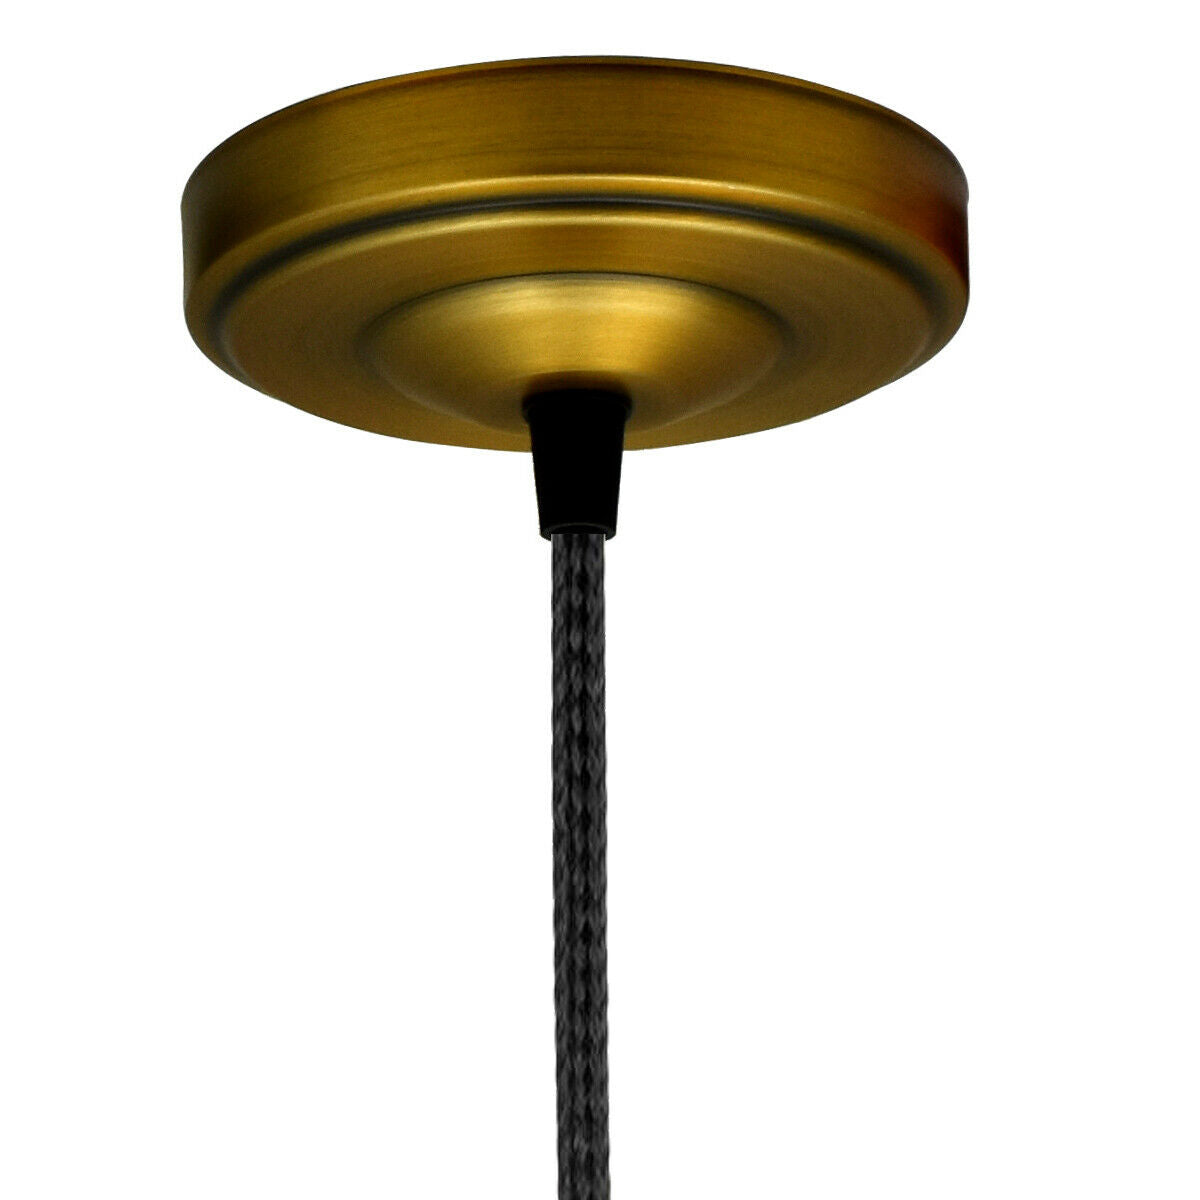 Yellow Brass Ceiling Rose 108mm Diameter Vintage Light Fitting~1466 - LEDSone UK Ltd